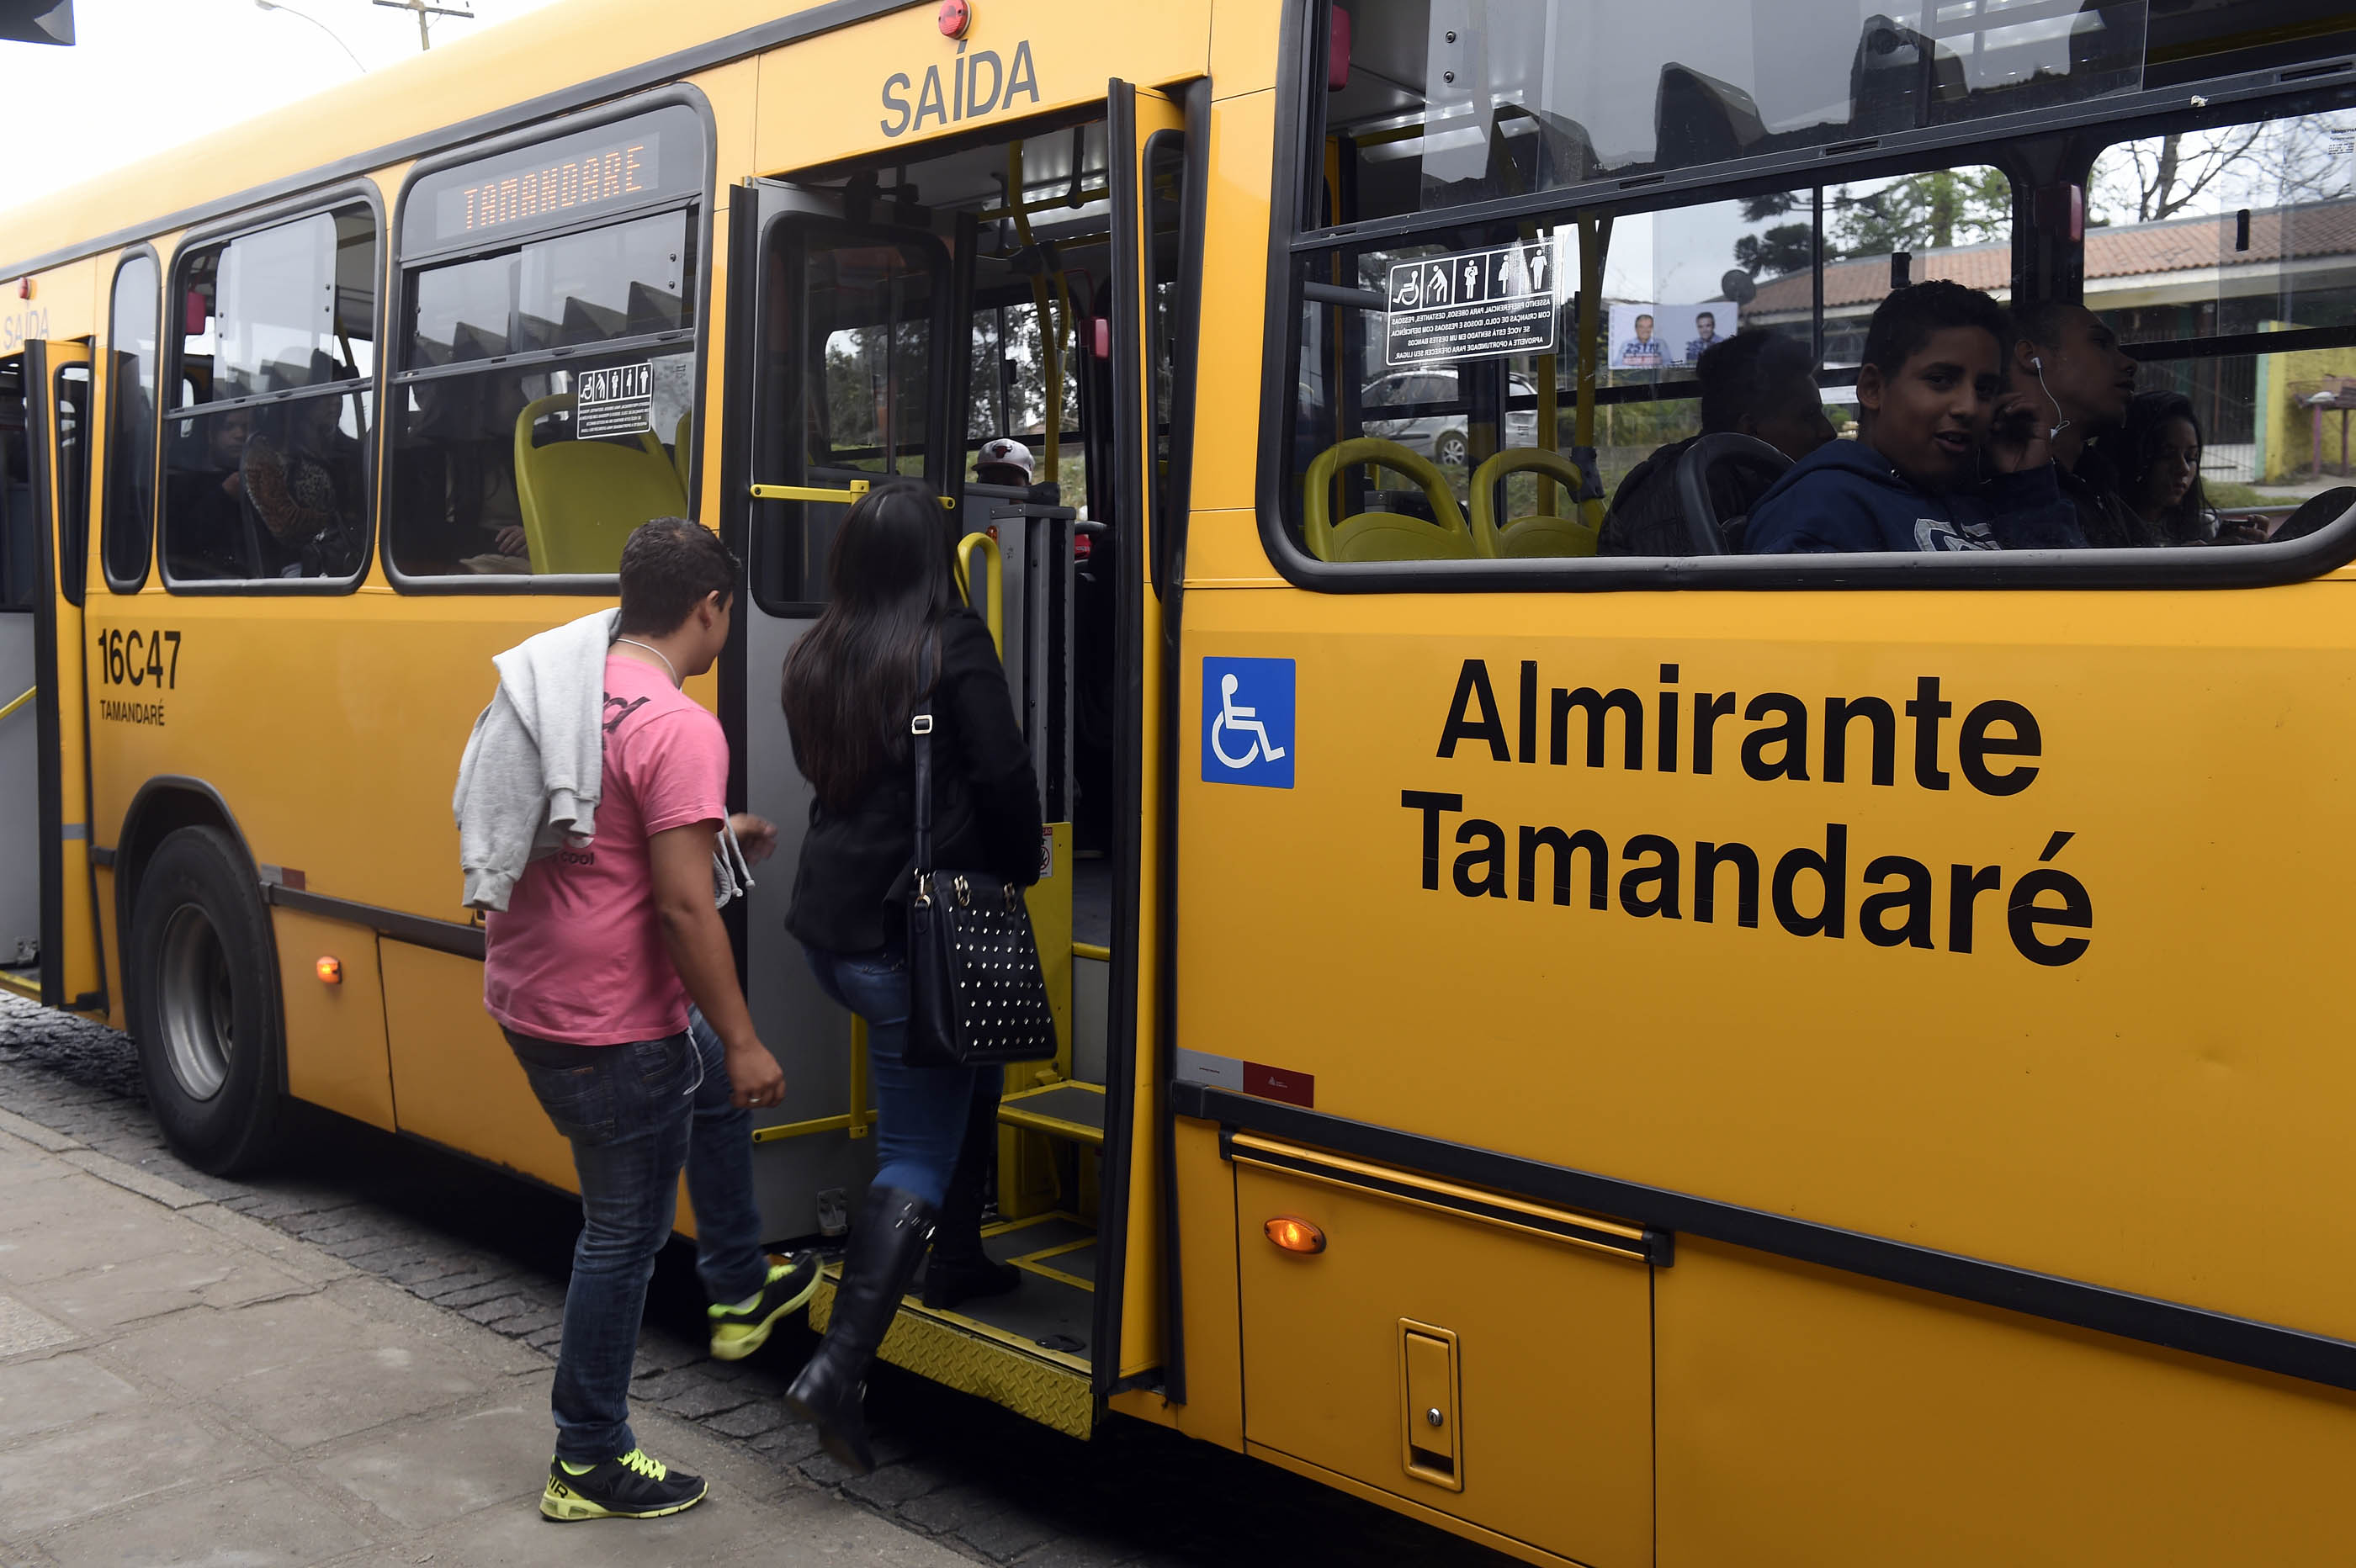 Comec diz que alterações em linhas de ônibus vão melhorar atendimento aos usuários.- Foto: Ricardo Almeida / ANPr